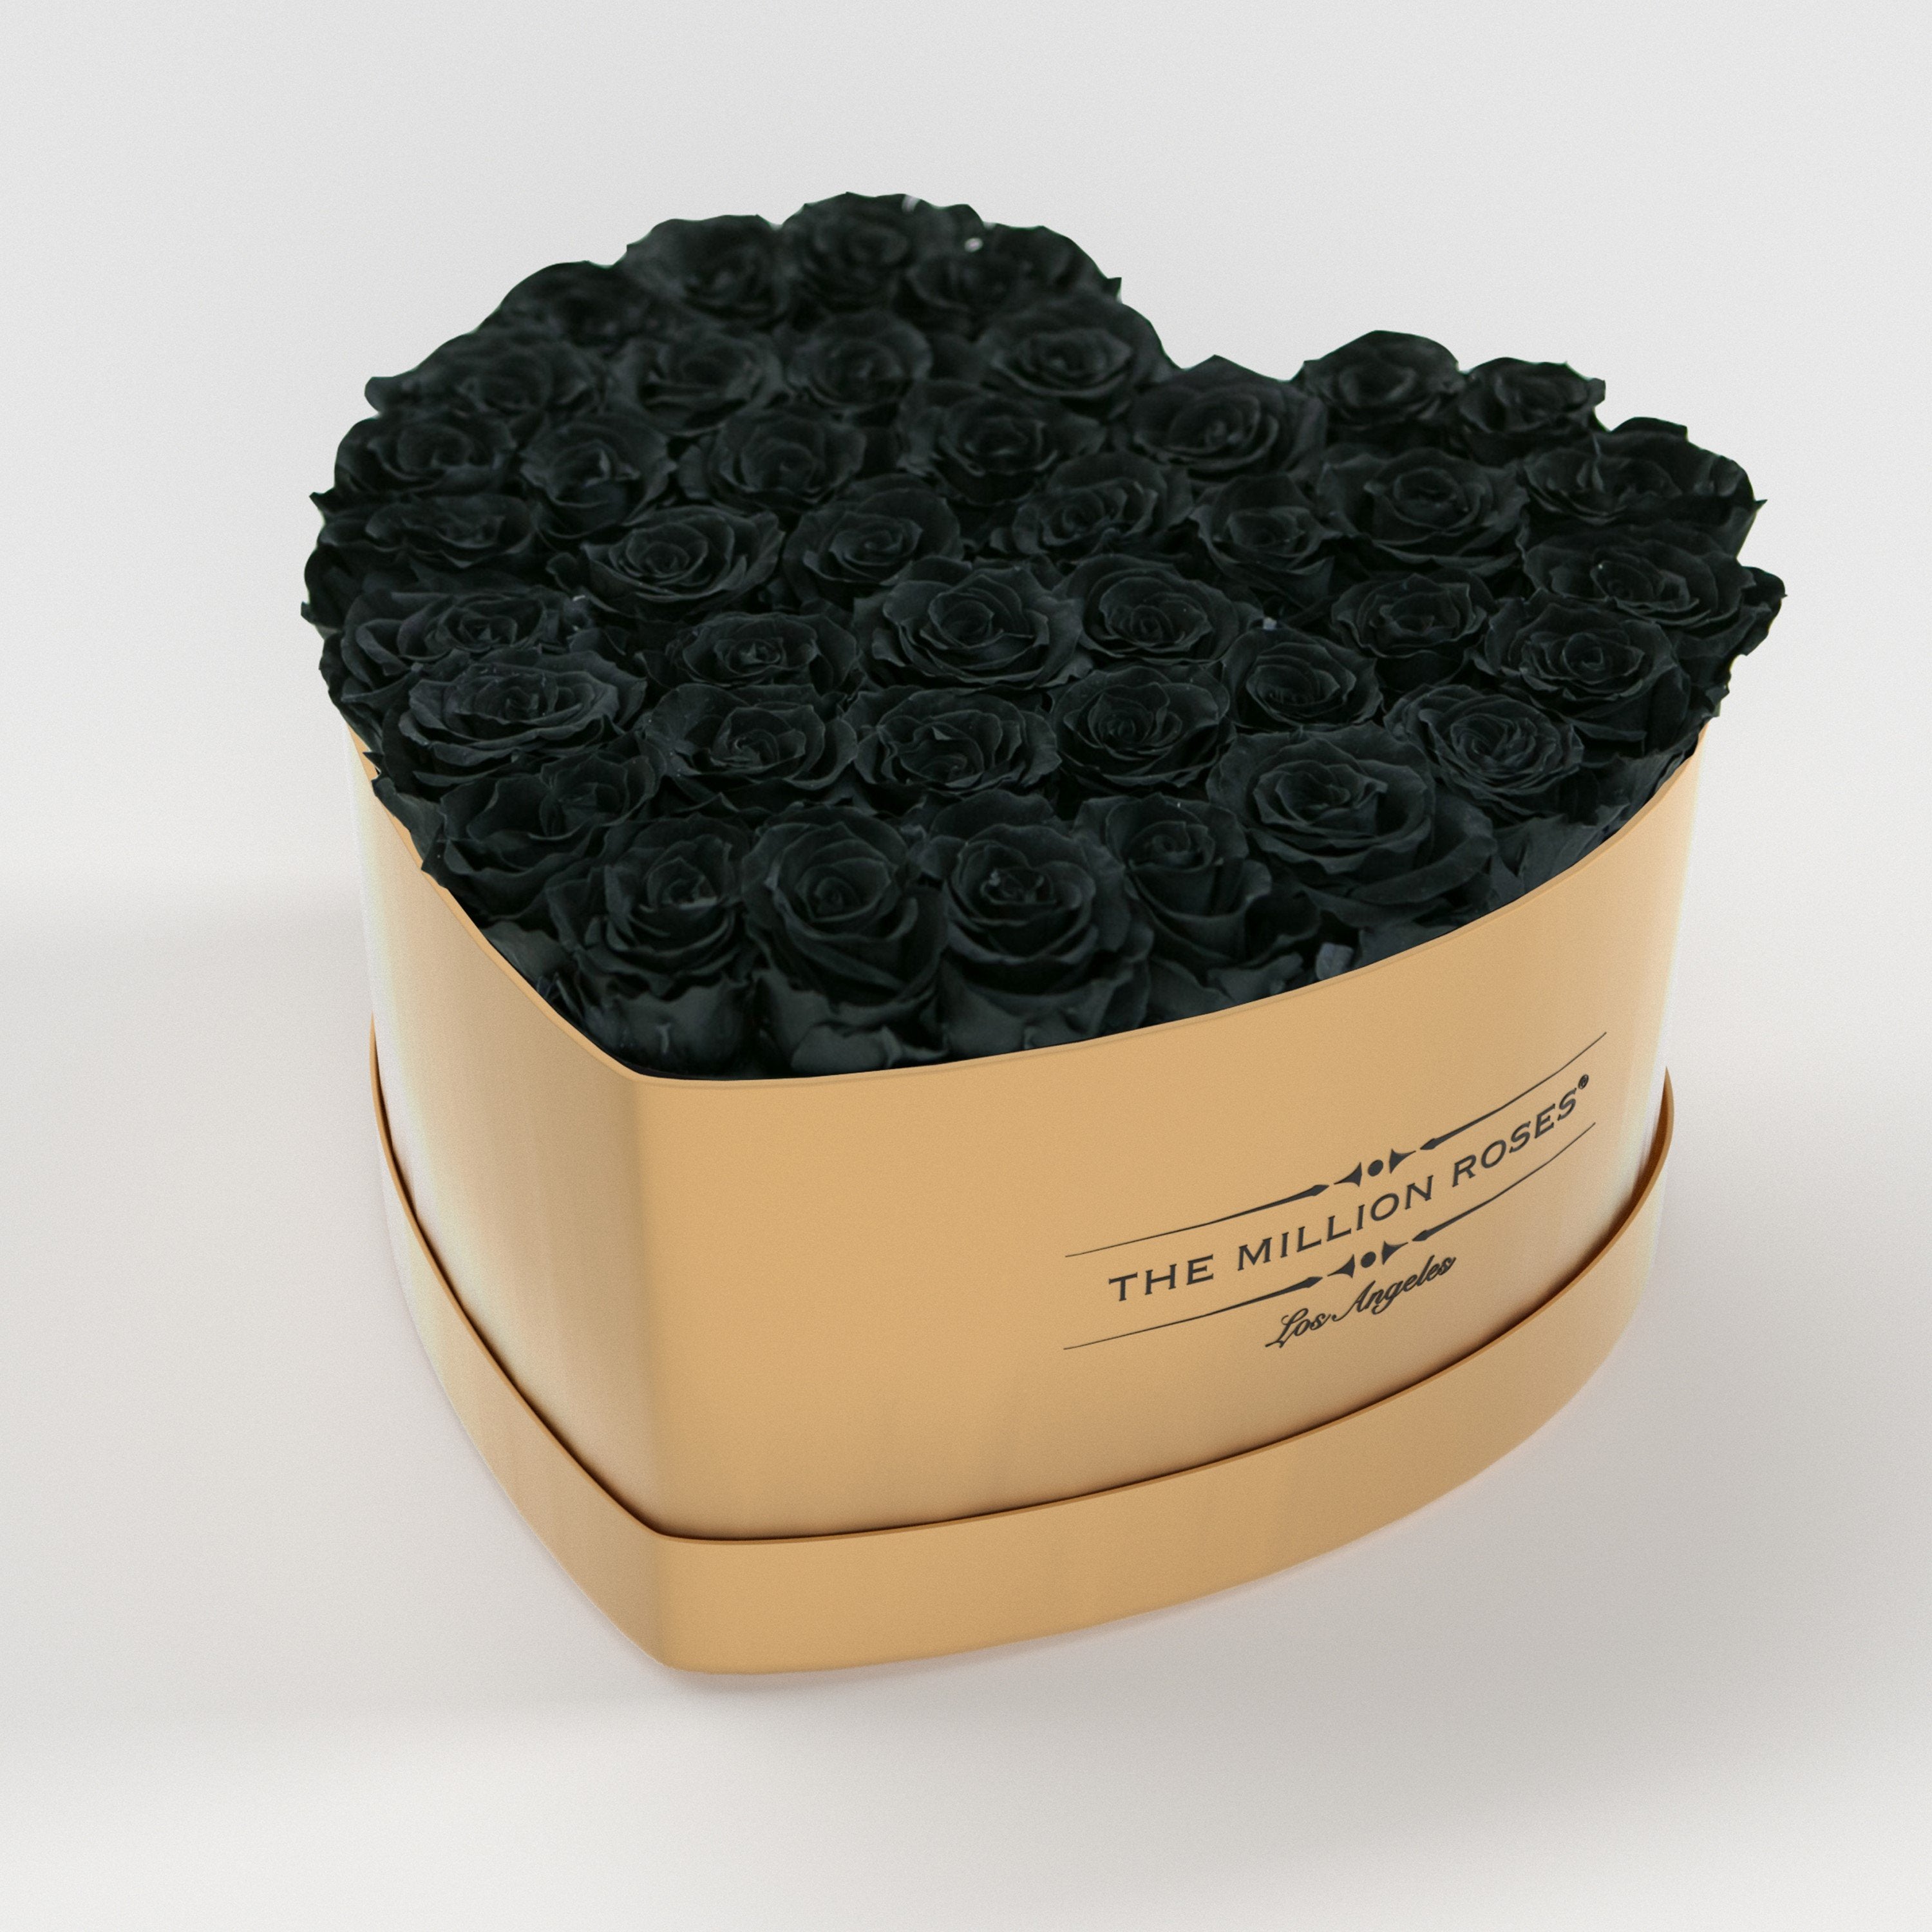 ( LA ) Gold - Love Box with Black Roses Kit - the million roses